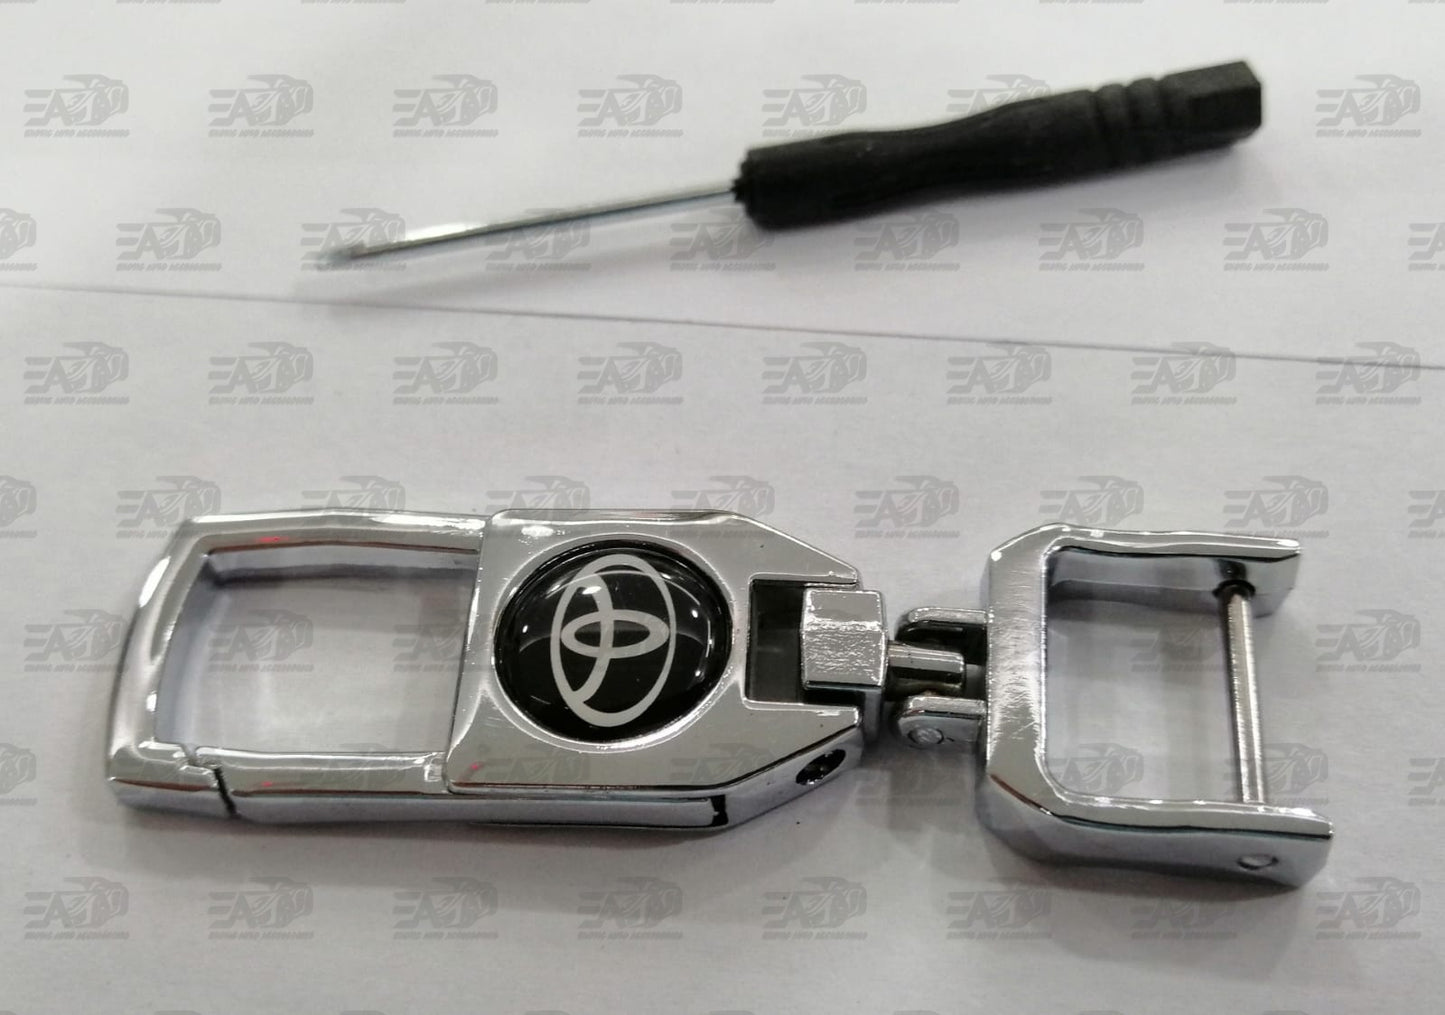 Toyota key ring/holder